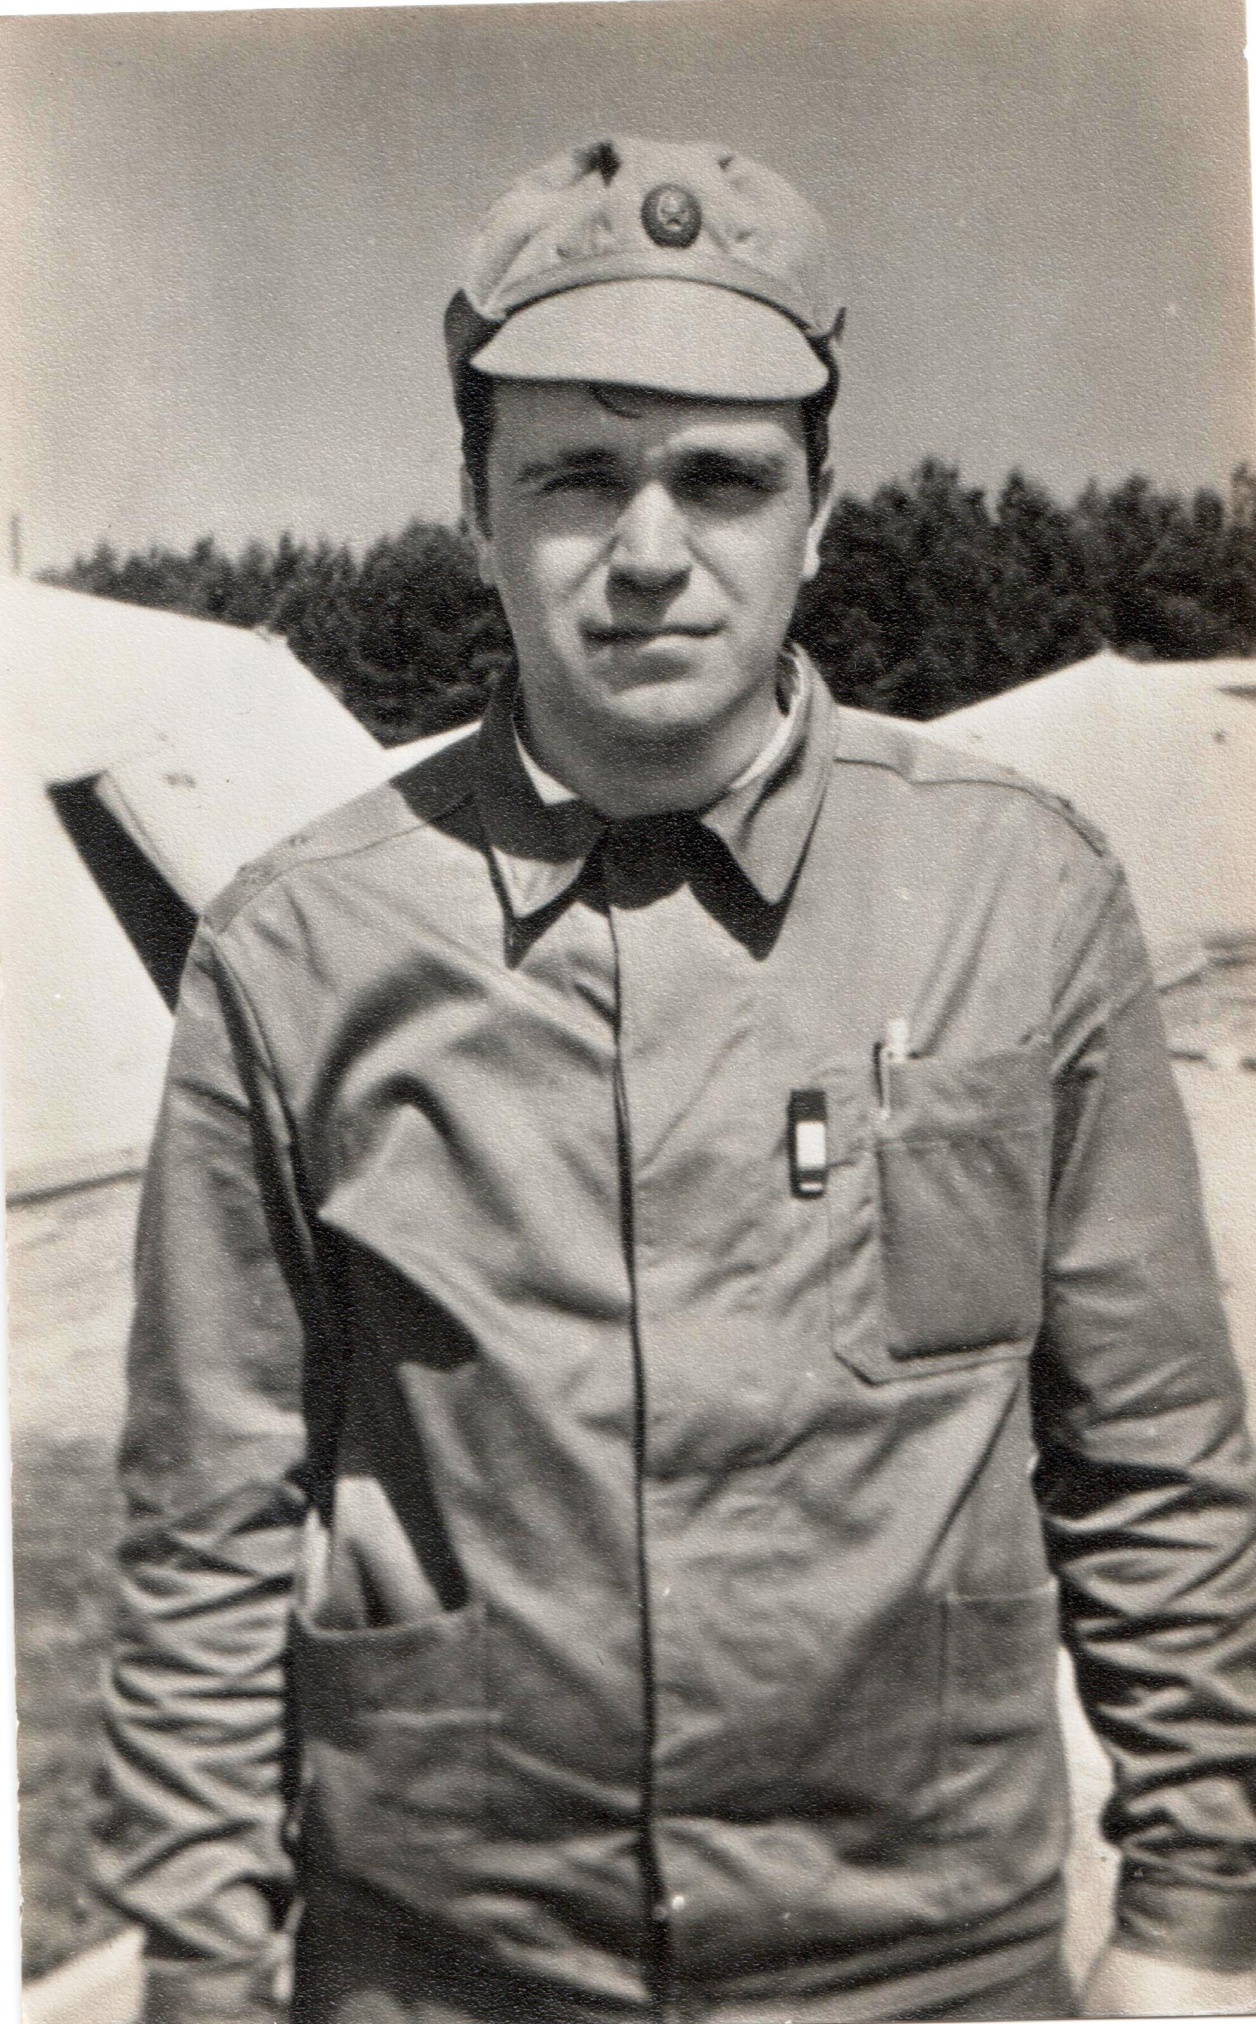 Фото «Старший лейтенант Богачев В.Г.», СССР, УССР, Киевская область, Чернобыль, 15 июня 1987 года